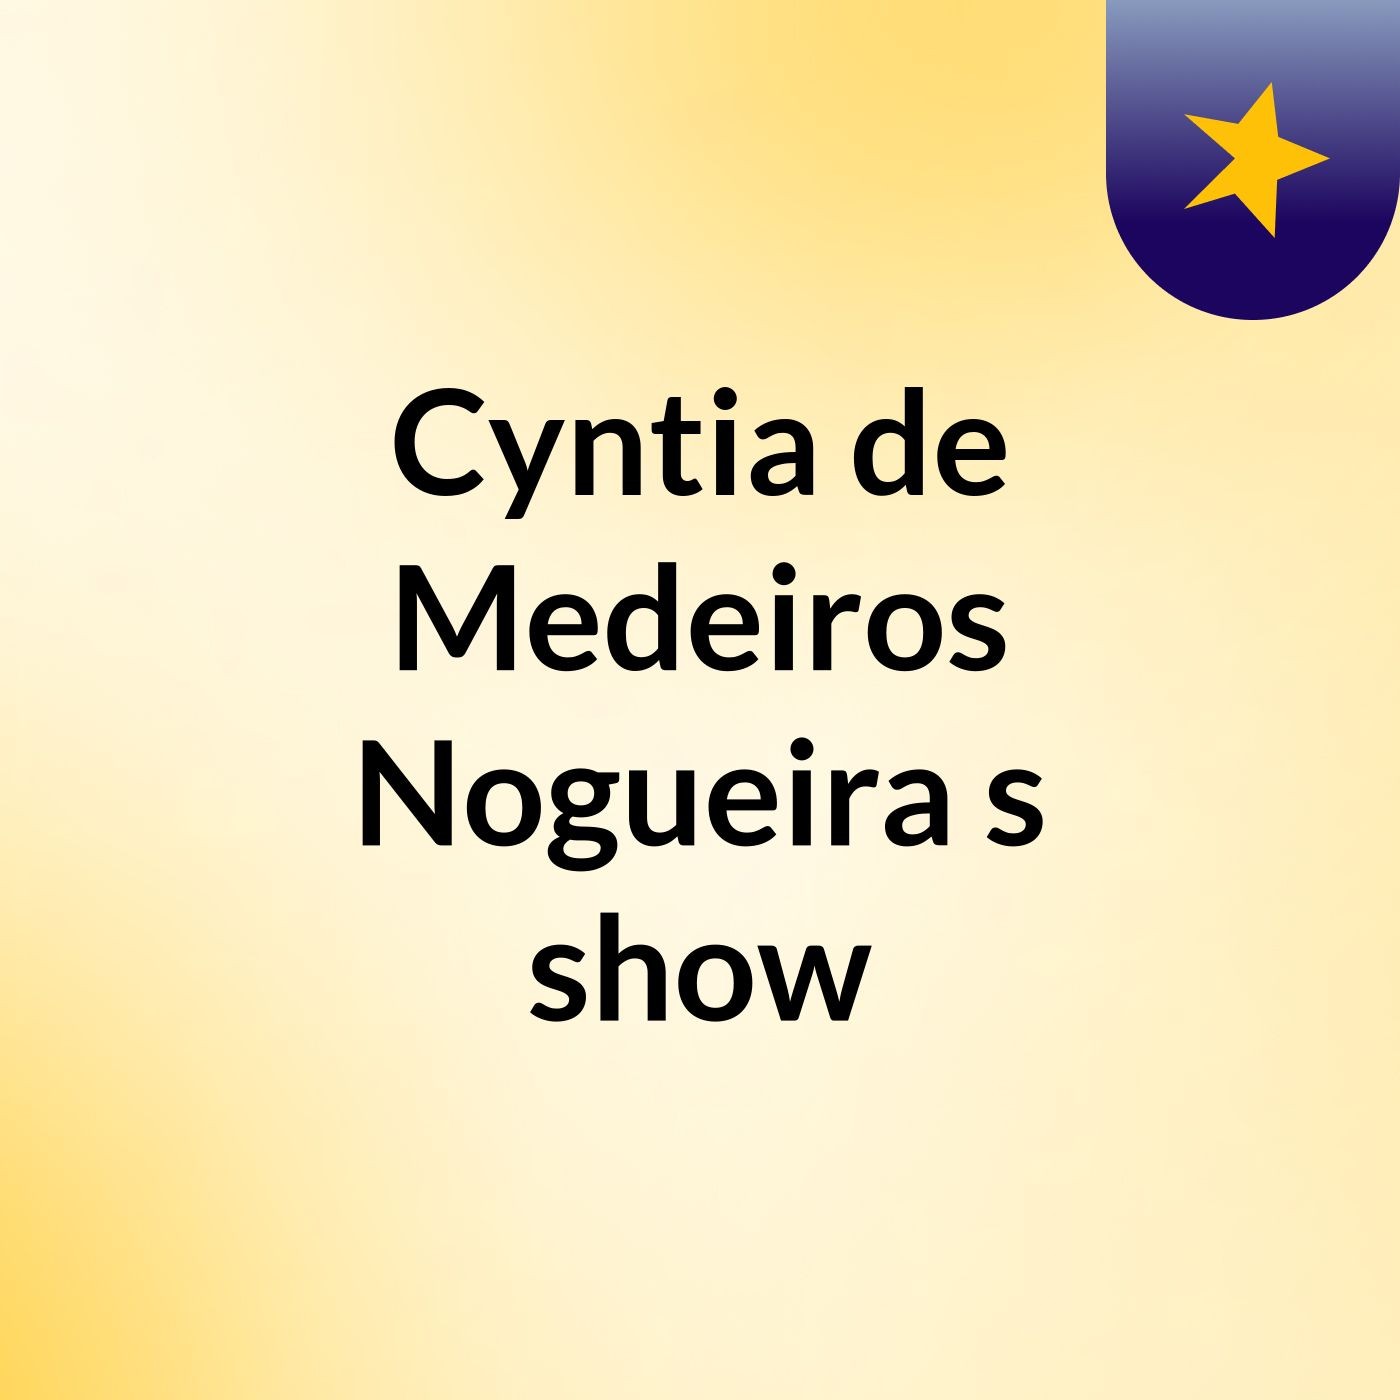 Cyntia de Medeiros Nogueira's show